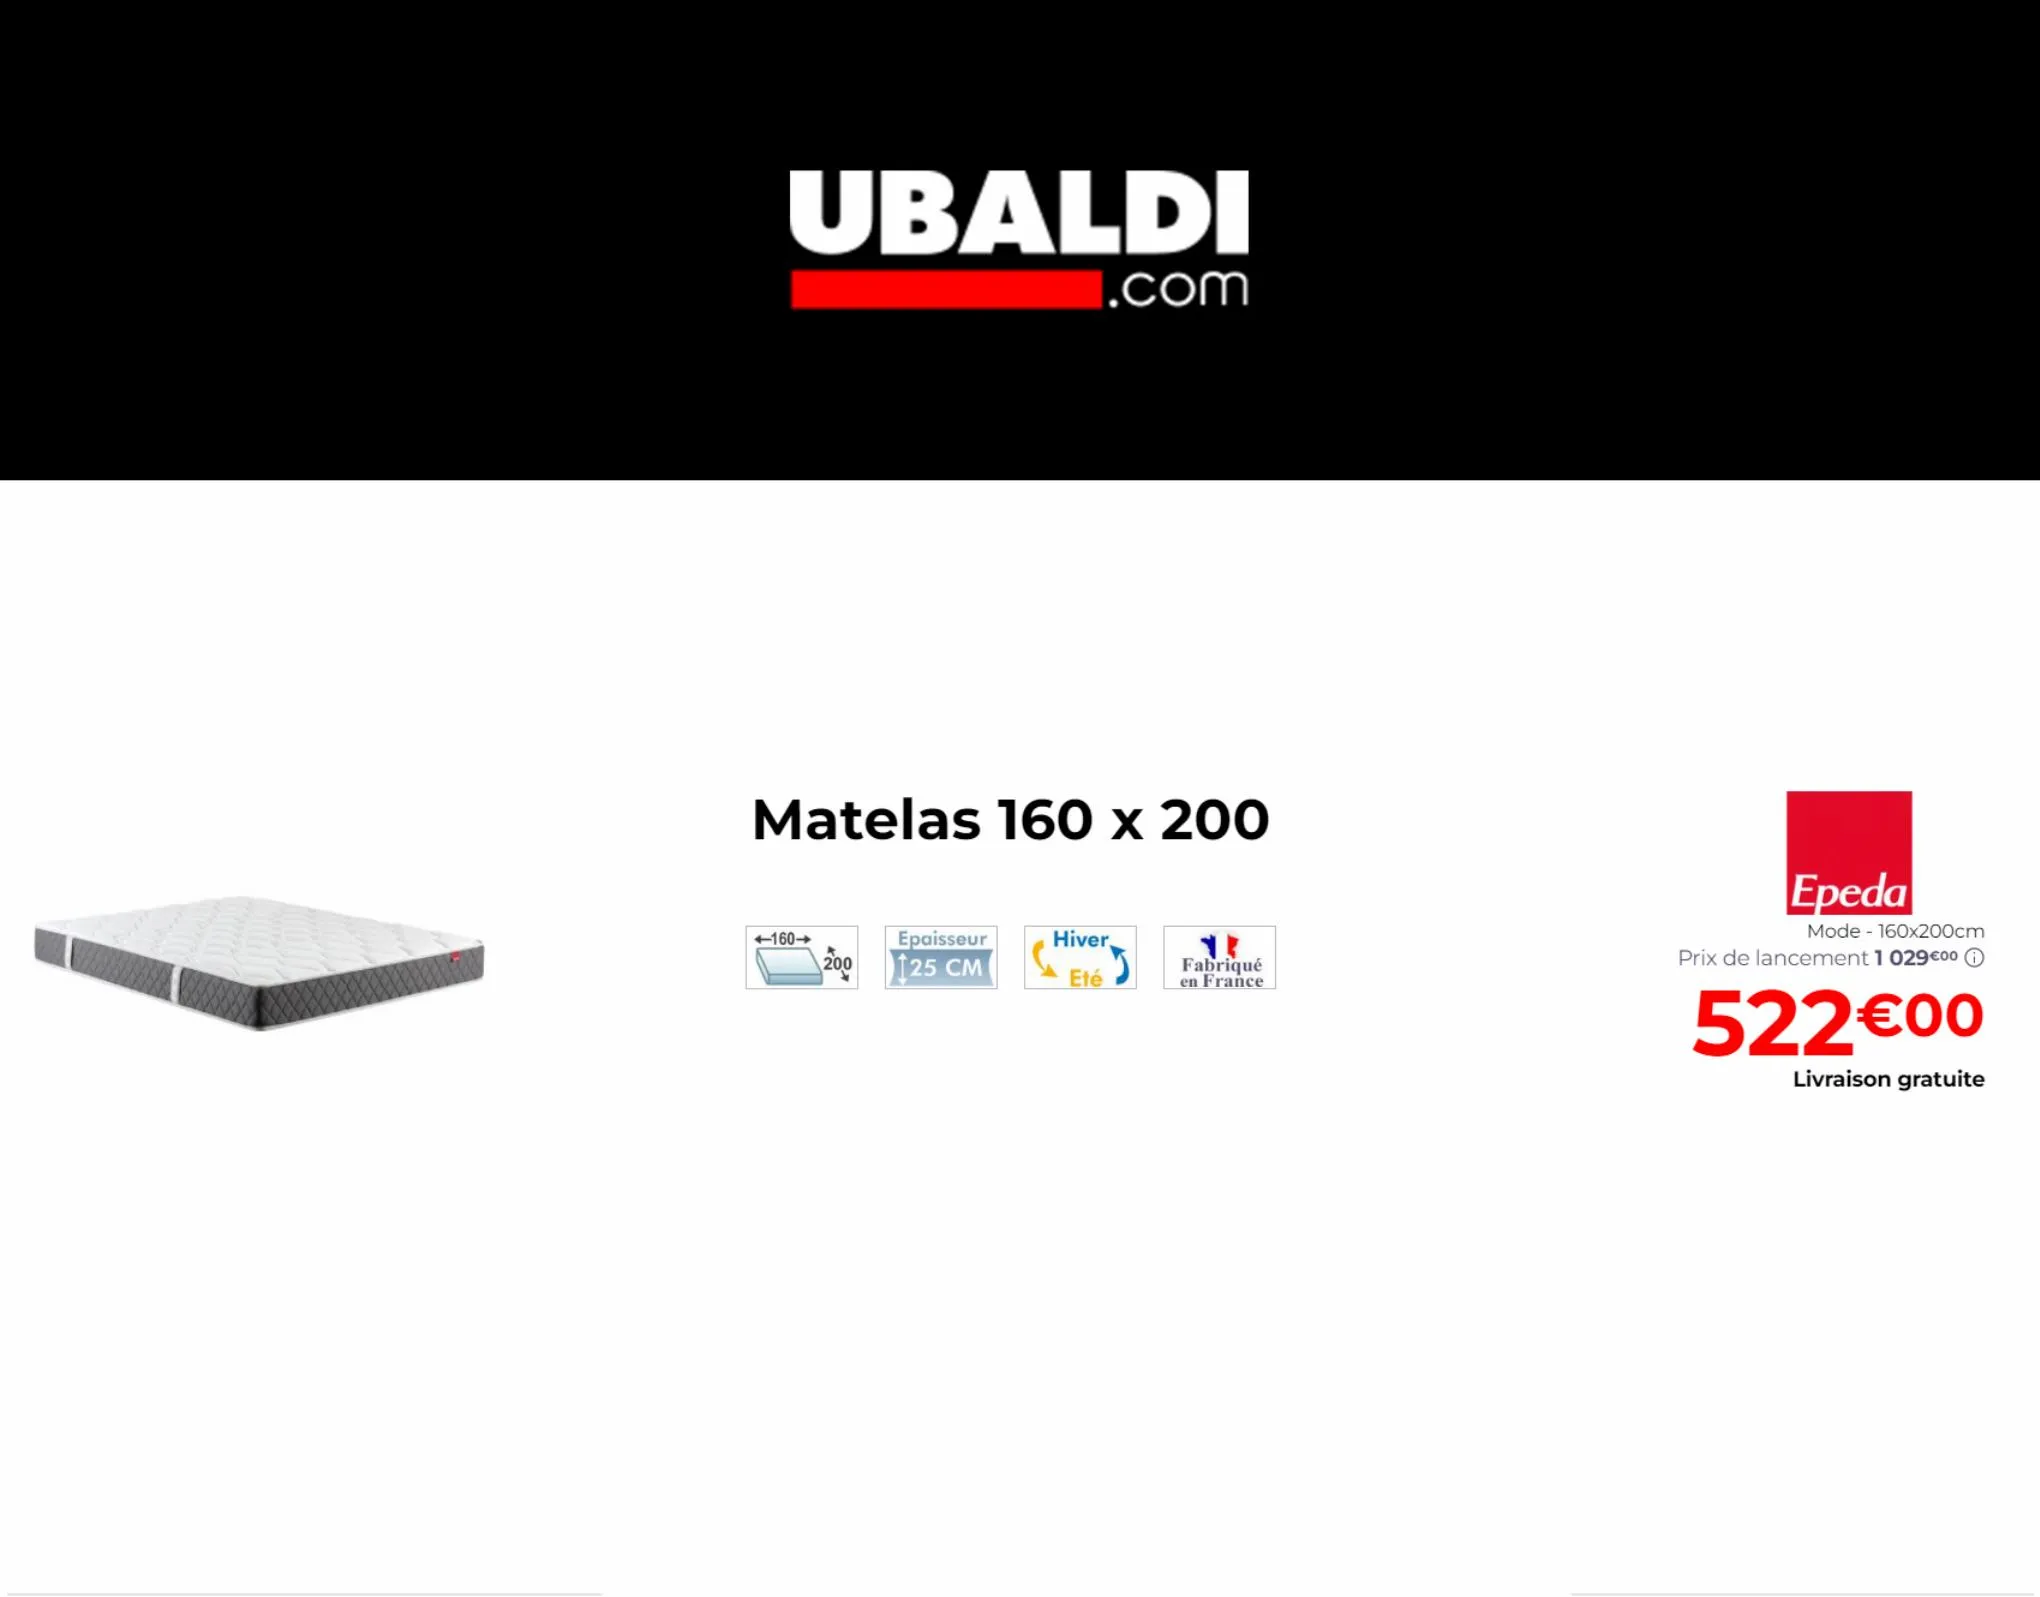 Catalogue Offres Speciales Ubaldi, page 00005